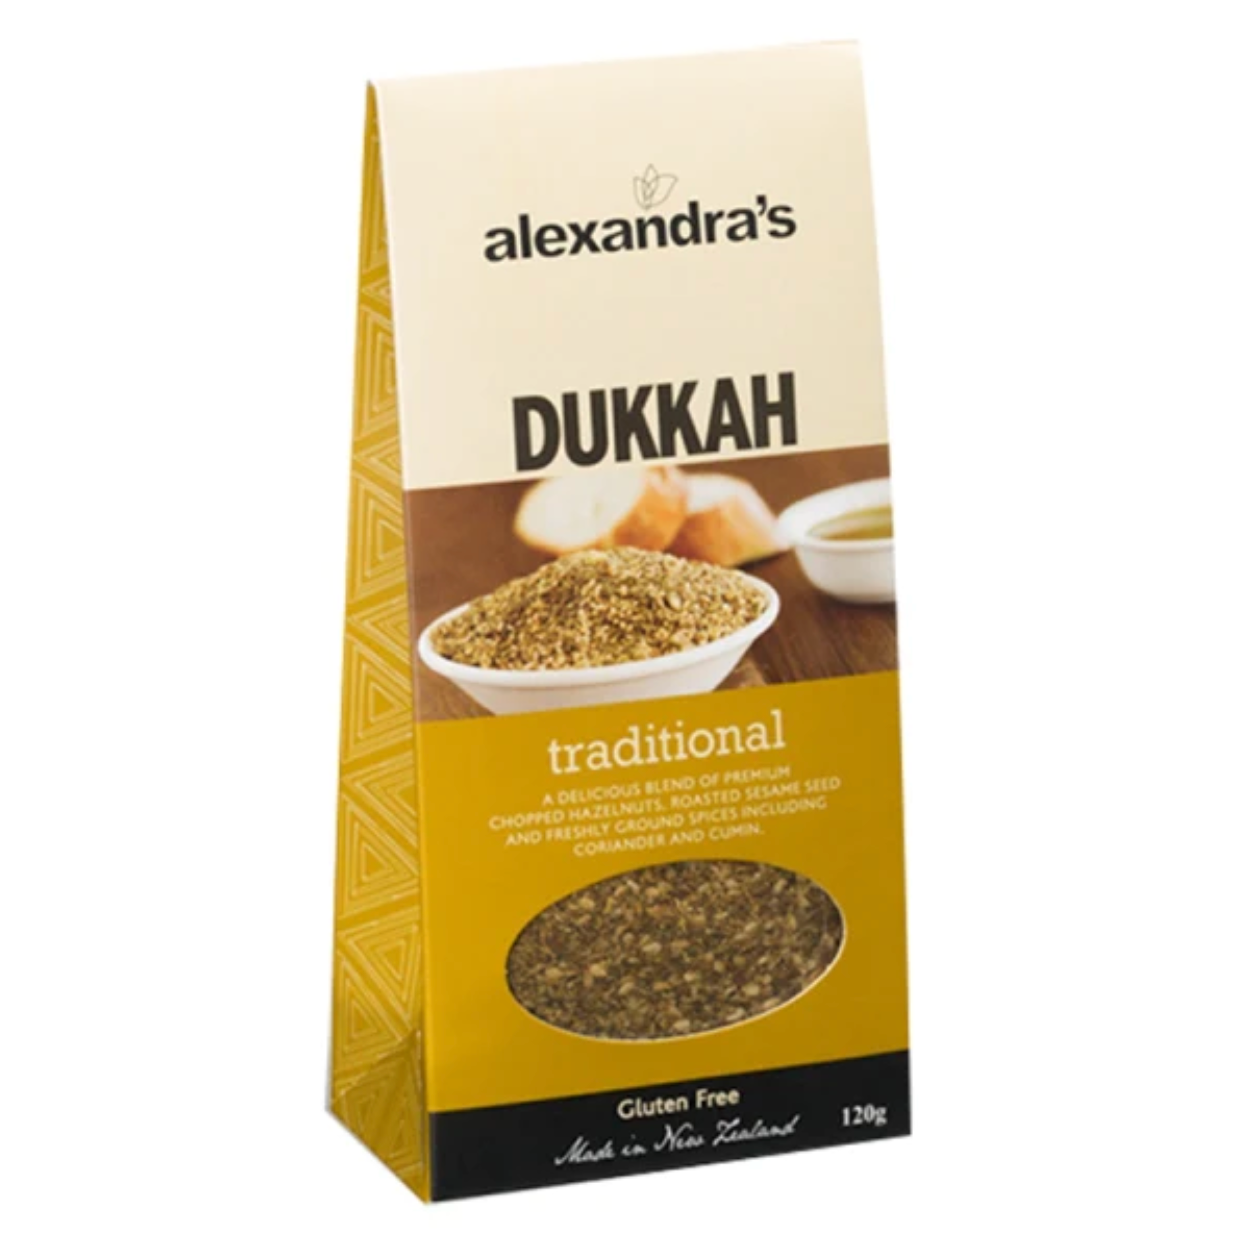 Traditional Dukkah